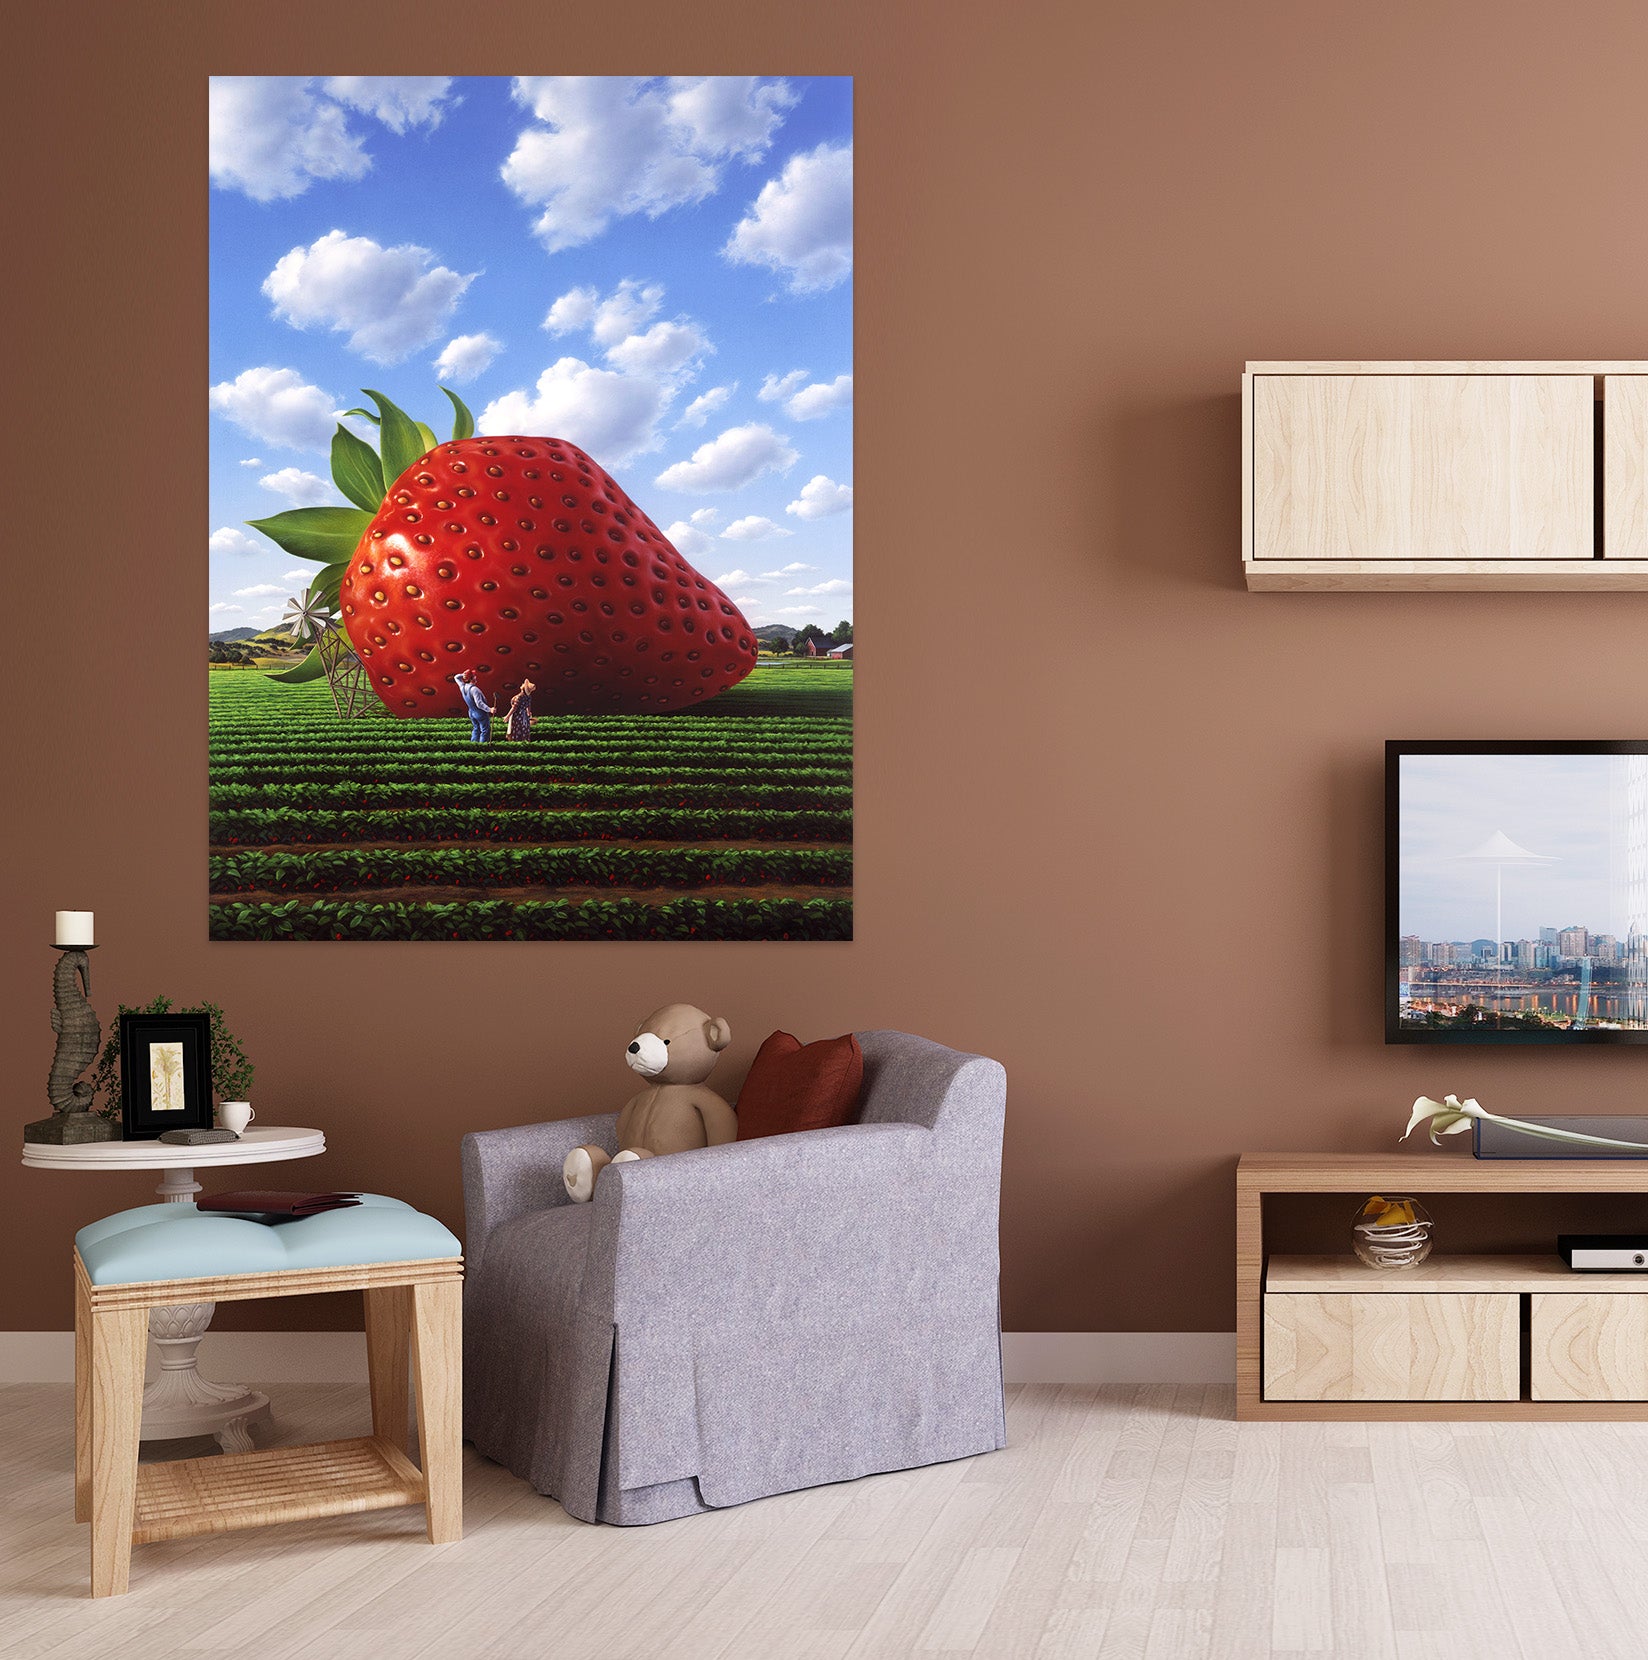 3D Giant Strawberry 85197 Jerry LoFaro Wall Sticker